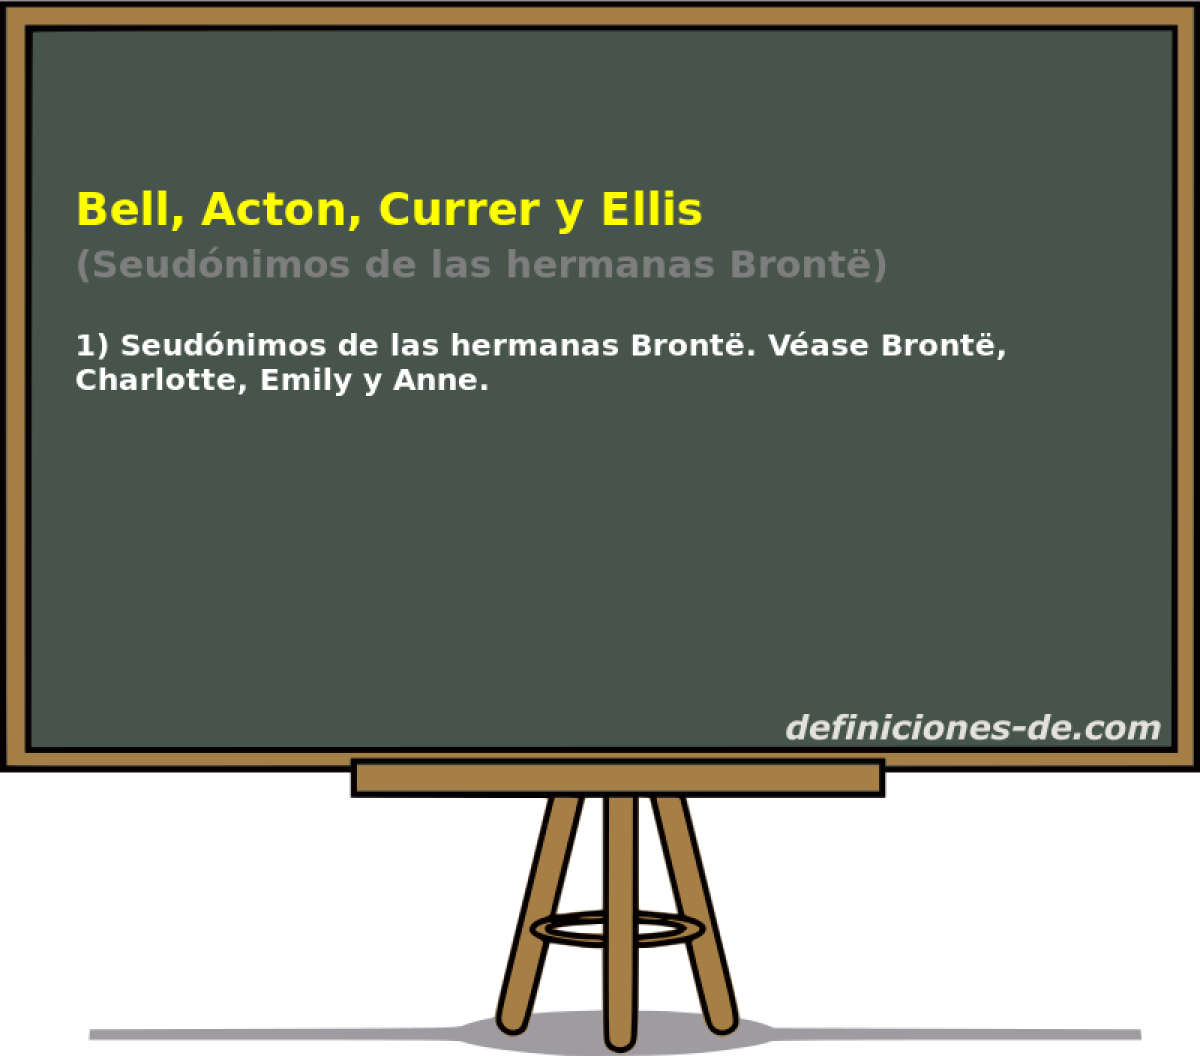 Bell, Acton, Currer y Ellis (Seudnimos de las hermanas Bront)